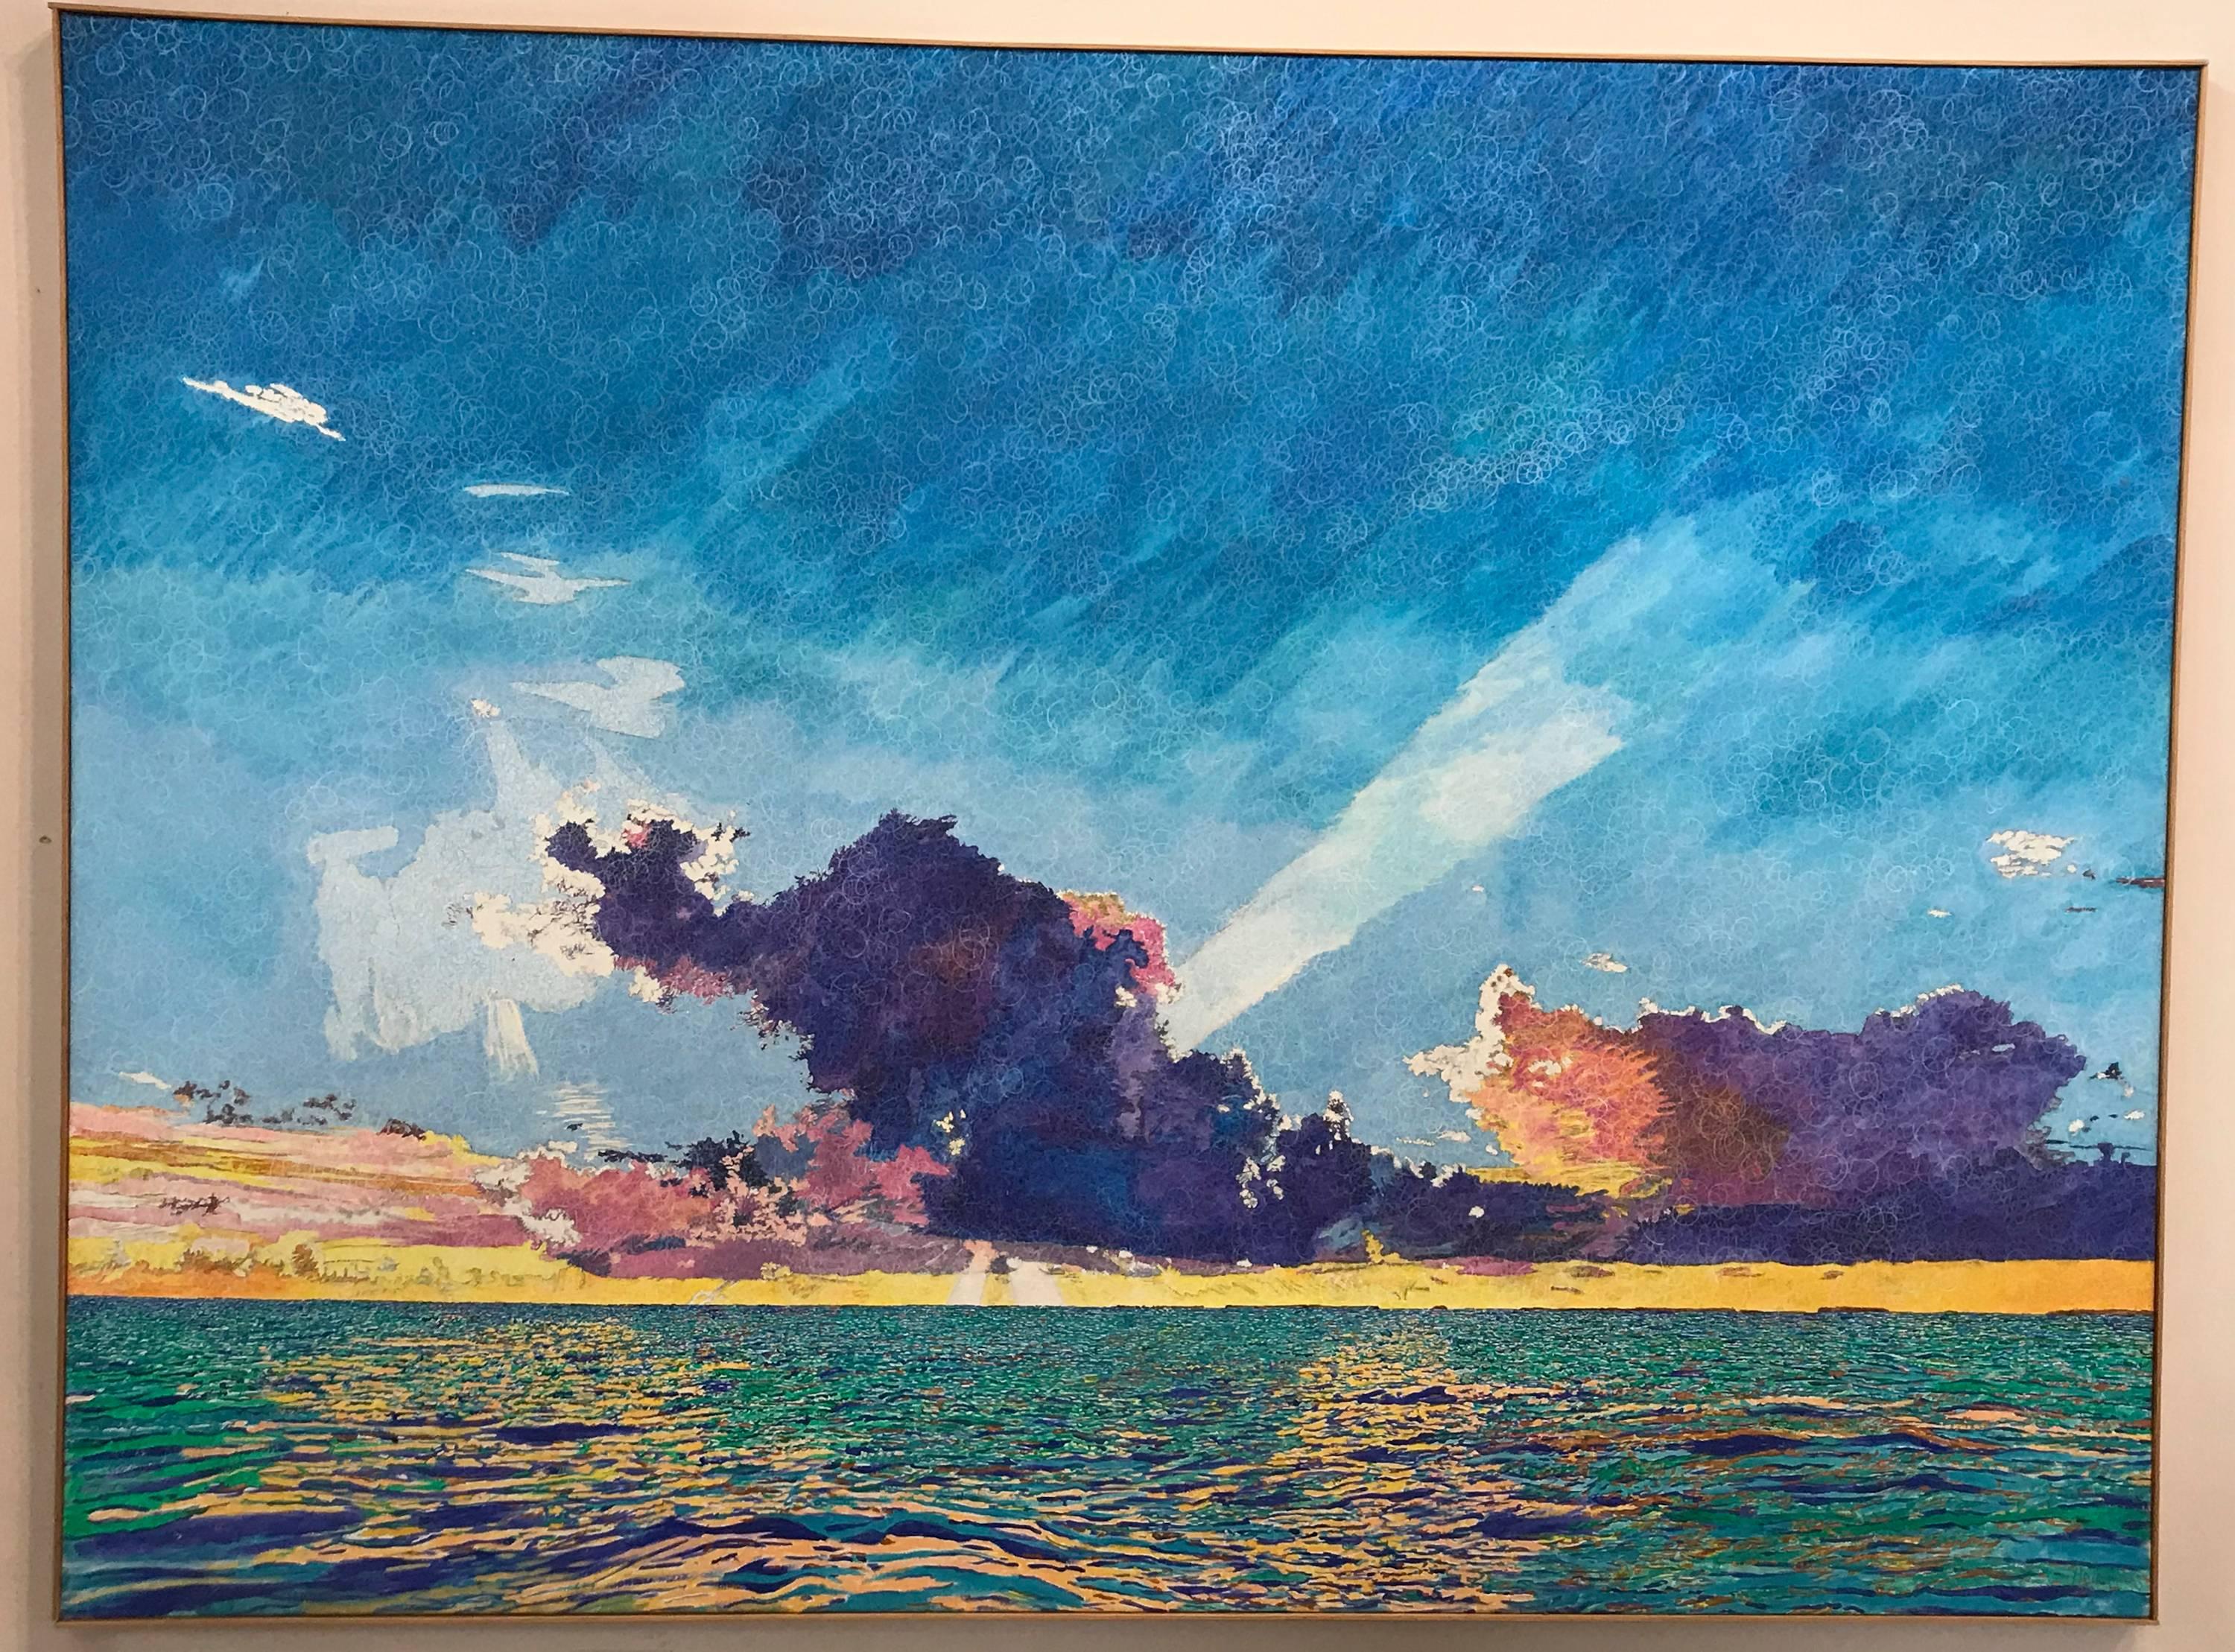 Atardecer Nubes marinas, Cayo Largo, azul, rosa, verde, pintura con textura, luz, grande